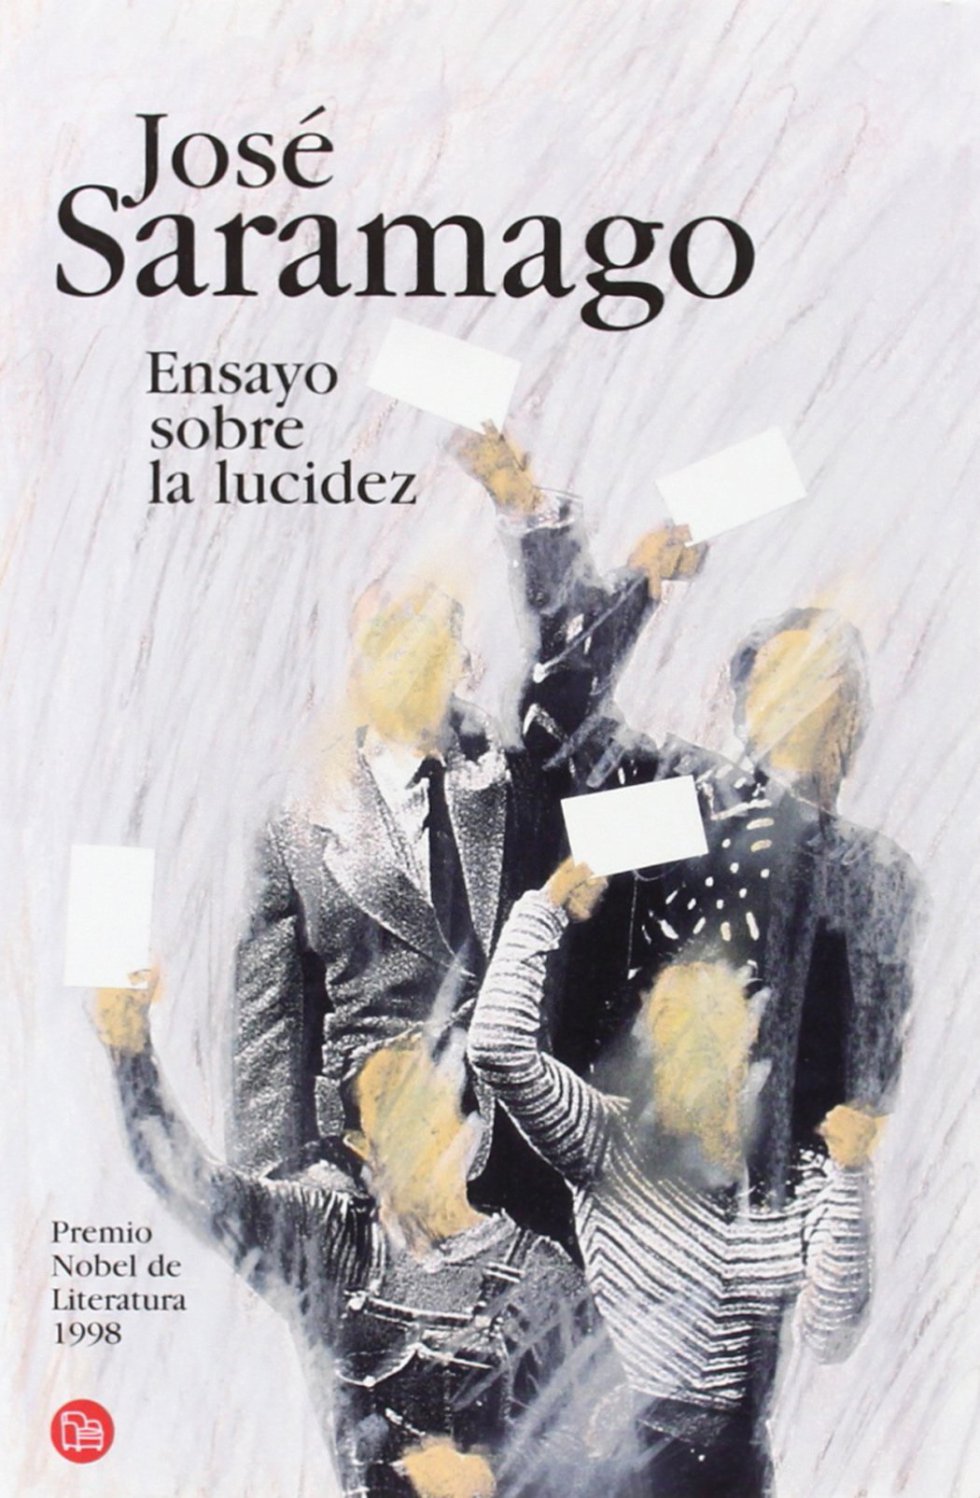 Si 'Ensayo sobre la ceguera' es, para muchos lectores de JosÃ© Saramago (1922-2010), una de las cumbres de su obra literaria, 'Ensayo sobre la lucidez', emparentado con aquel, continÃºa siendo un libro de plena actualidad, una reflexiÃ³n analÃ­tica, inteligente y Ã¡cida, escrita en estado de gracia, sobre el verdadero significado de una palabra erosionada en nuestros dÃ­as: democracia. El Ãºnico Nobel de la lengua portuguesa, que reclamÃ³ para sÃ­ la condiciÃ³n de escribir ensayos a travÃ©s de sus novelas, interpreta y disecciona en estas pÃ¡ginas vibrantes los males de nuestra sociedad, situando al lector frente a un espejo que es como un disparo en la conciencia. FICHA: 'Ensayo sobre la lucidez'. Autor: JosÃ© Saramago. TraducciÃ³n: Pilar del RÃ­o. Alfaguara, 2004.